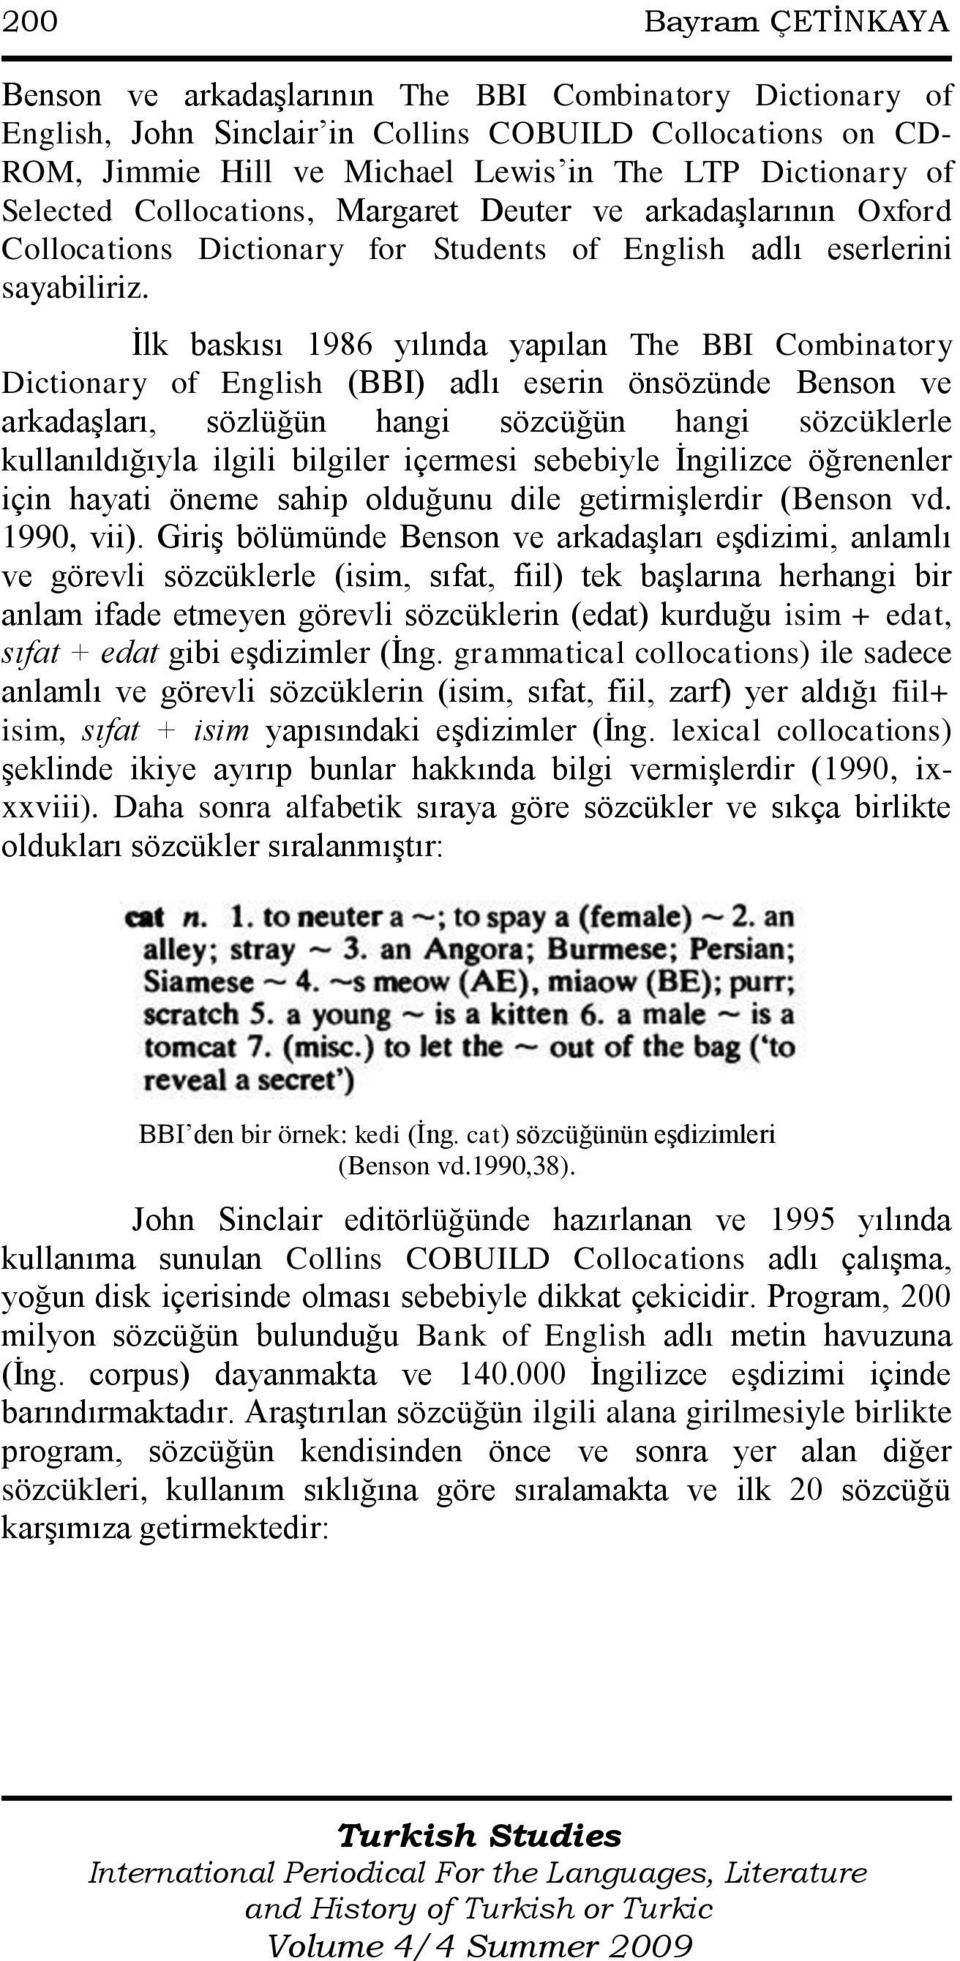 Ġlk baskısı 1986 yılında yapılan The BBI Combinatory Dictionary of English (BBI) adlı eserin önsözünde Benson ve arkadaşları, sözlüğün hangi sözcüğün hangi sözcüklerle kullanıldığıyla ilgili bilgiler